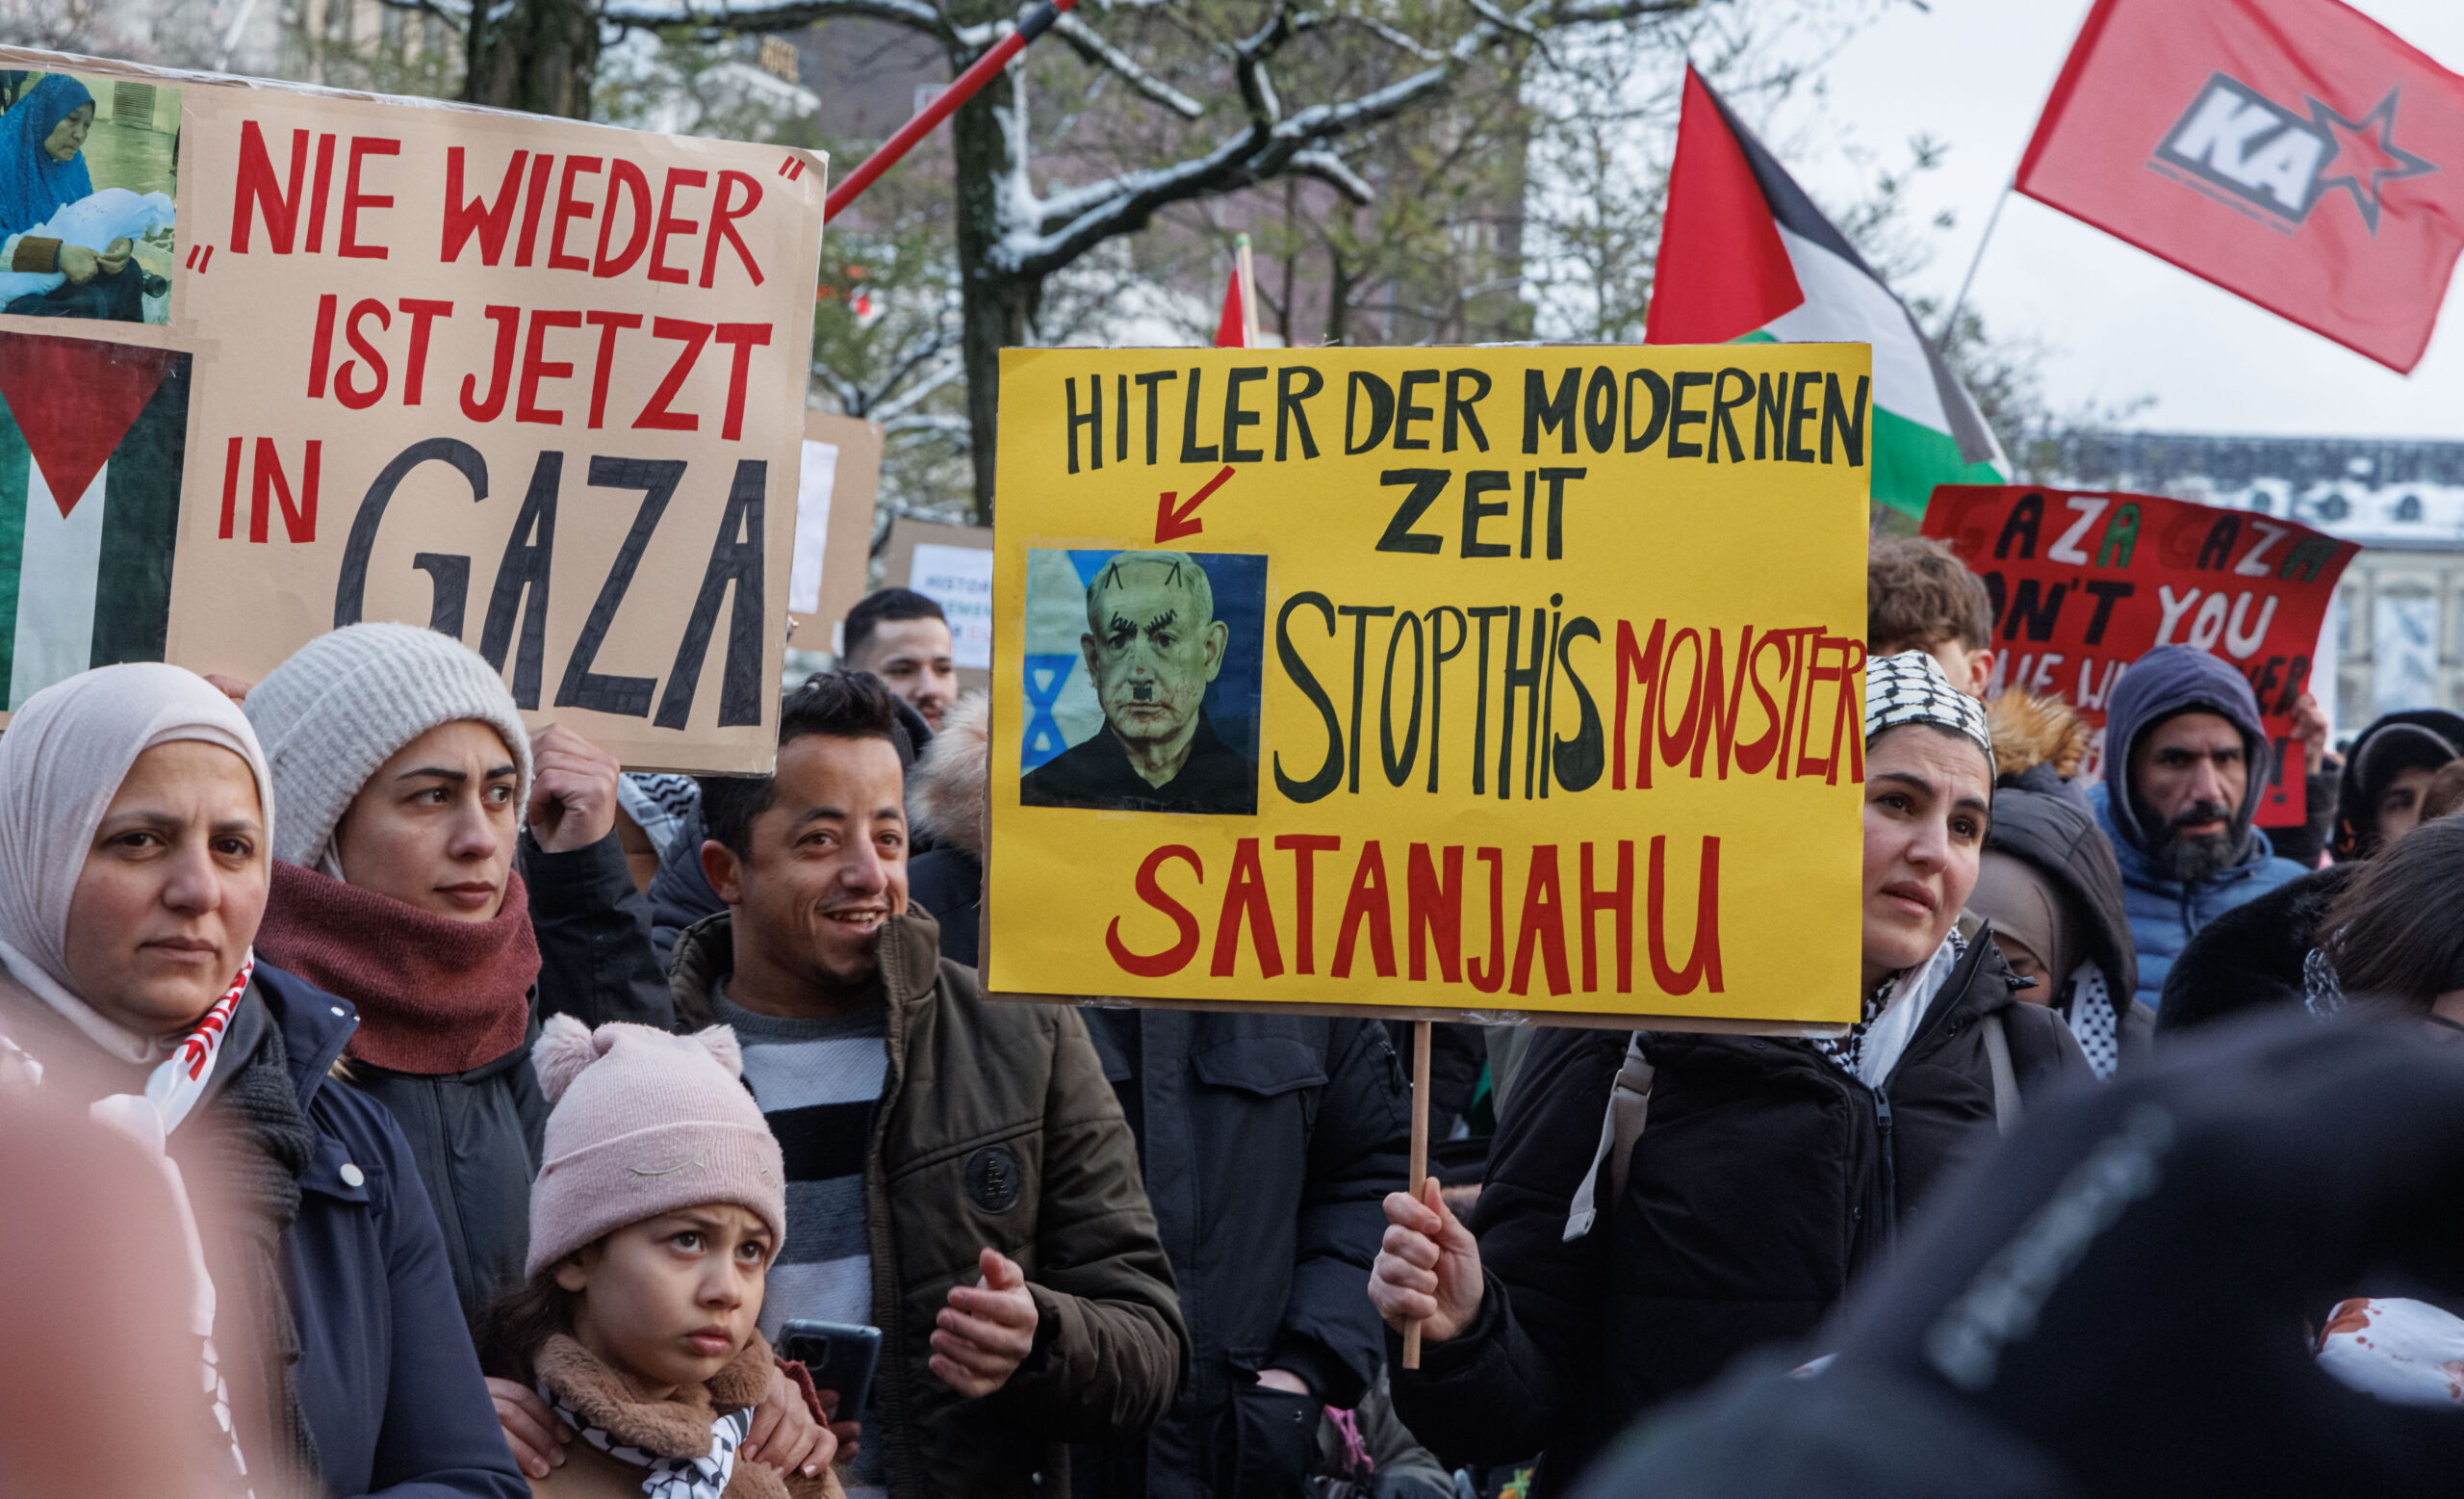 Eine Demonstrantin hält bei einer propalästinensischen Demonstration ein Schild mit der Aufschrift "Hitler der modernen Zeit stop this monster Satanjahu!» gegen den israelischen Regierungschef Netanjahu. (Archivbild)